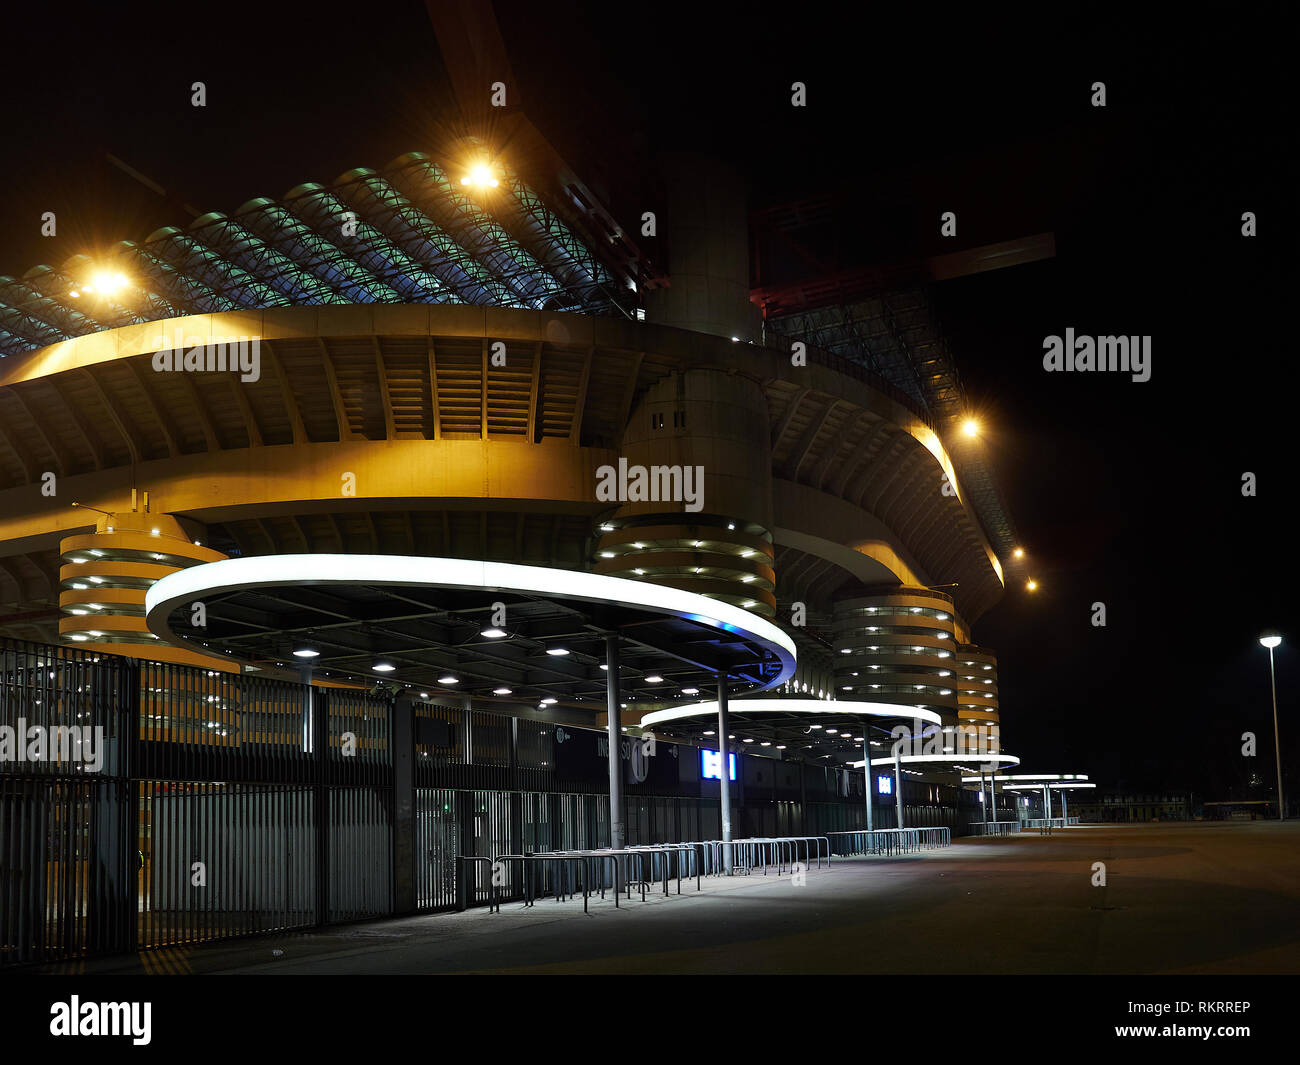 Das San Siro Stadion Haus von Inter Mailand und AC Milan Fußball Fußball Clubs in Mailand Italien durch die Nacht. Es ist auch als Giuseppe Meazza Stadion bekannt. Stockfoto